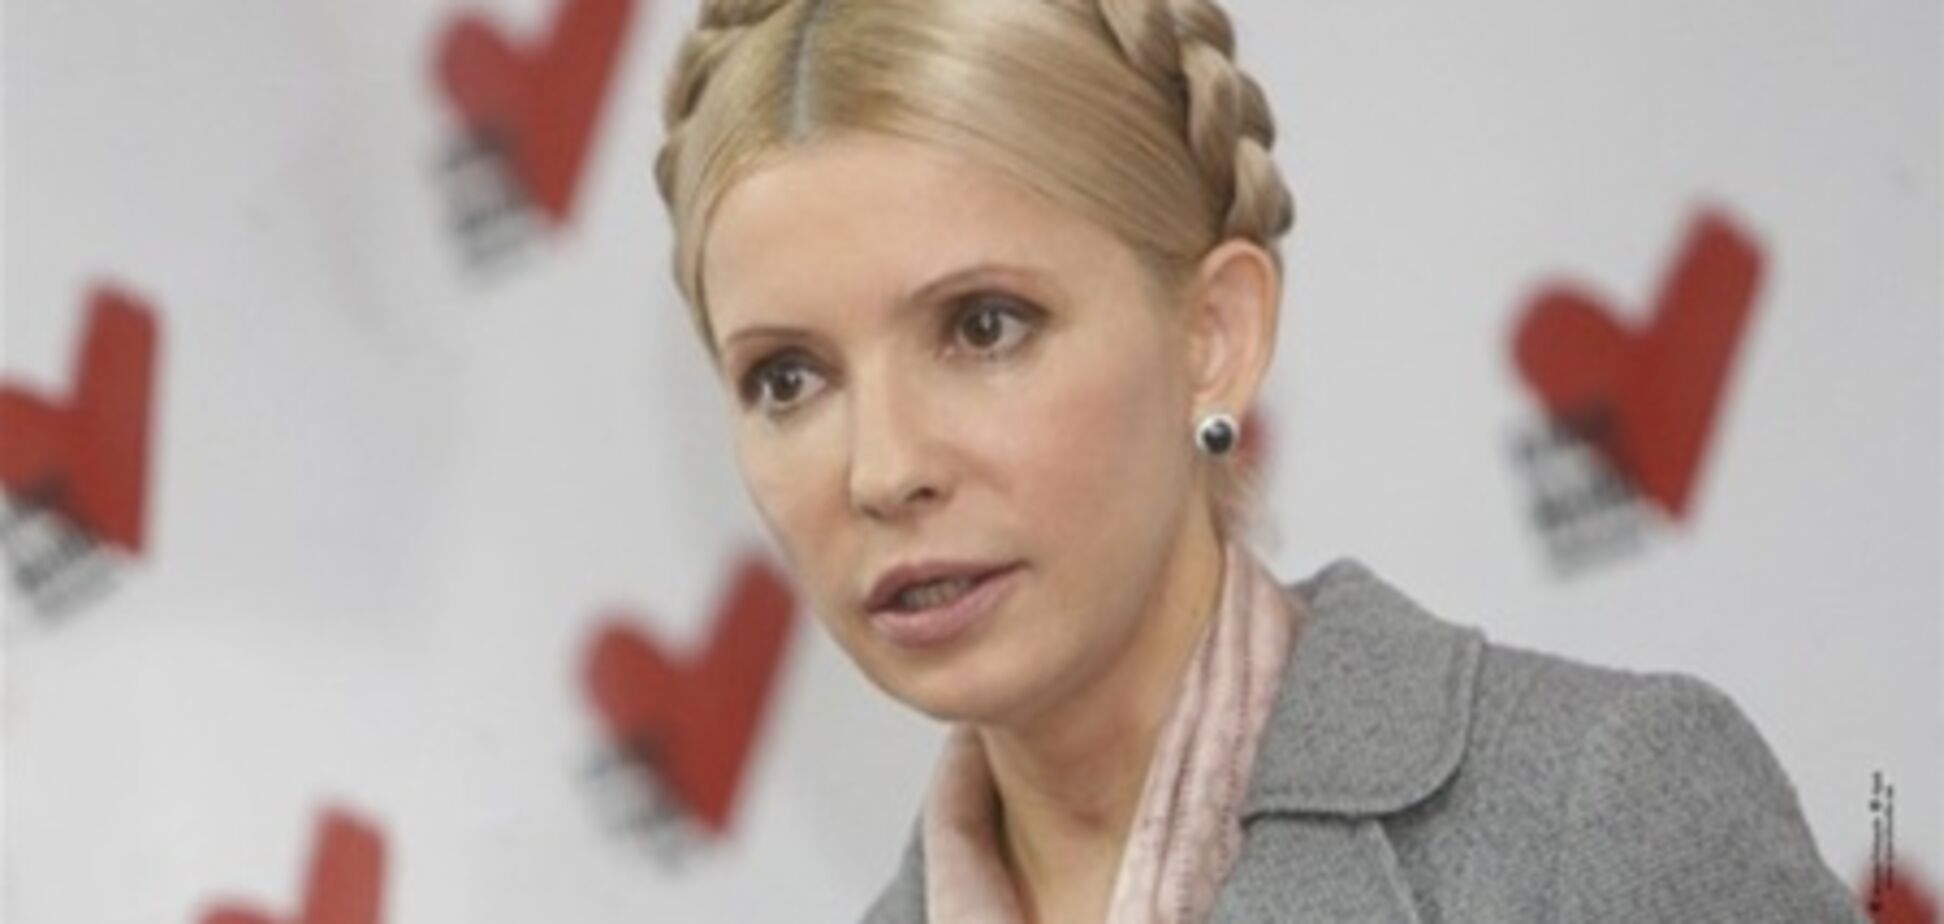 Тигипко: дело Тимошенко не должно влиять на отношения ЕС и Украины